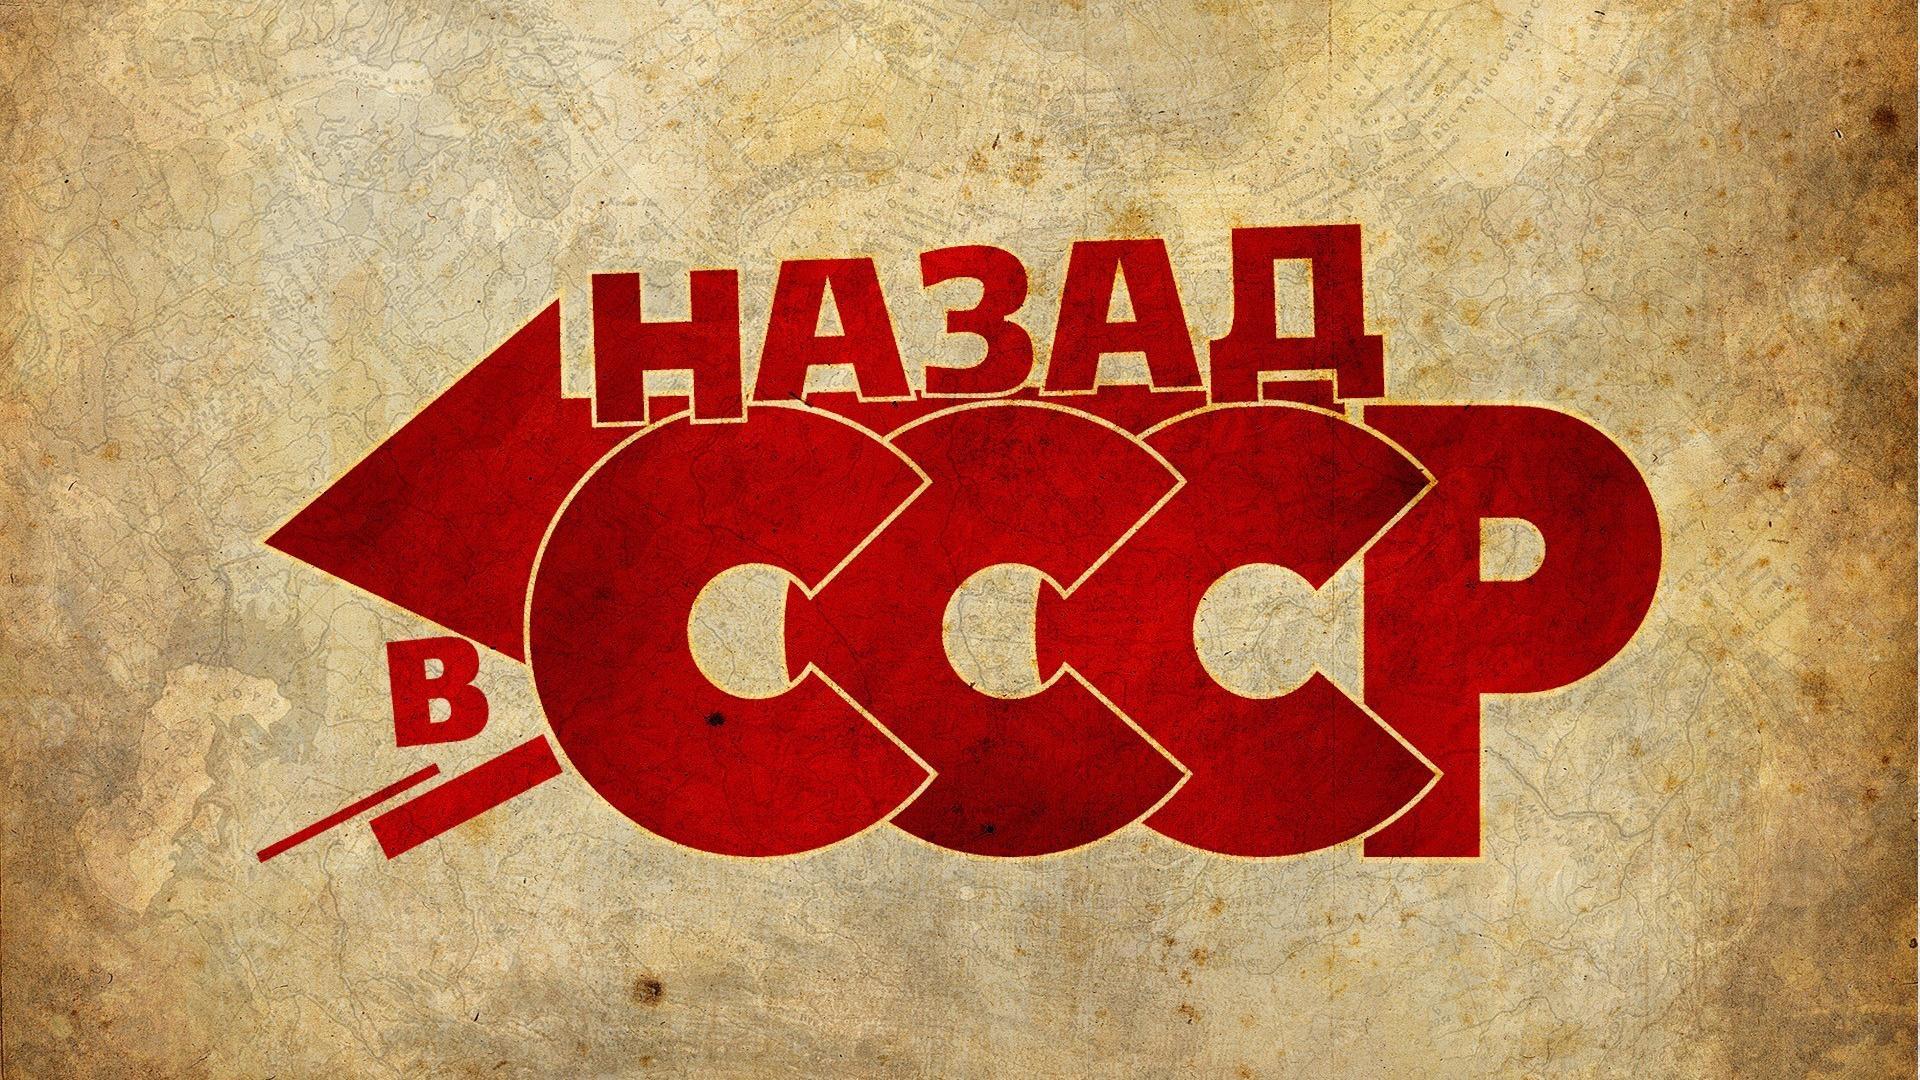 Wallpaper  communism revolution USSR Soviet Union China Karl Marx  minimalism red background 3840x2160  u533fu540d  1942819  HD Wallpapers   WallHere